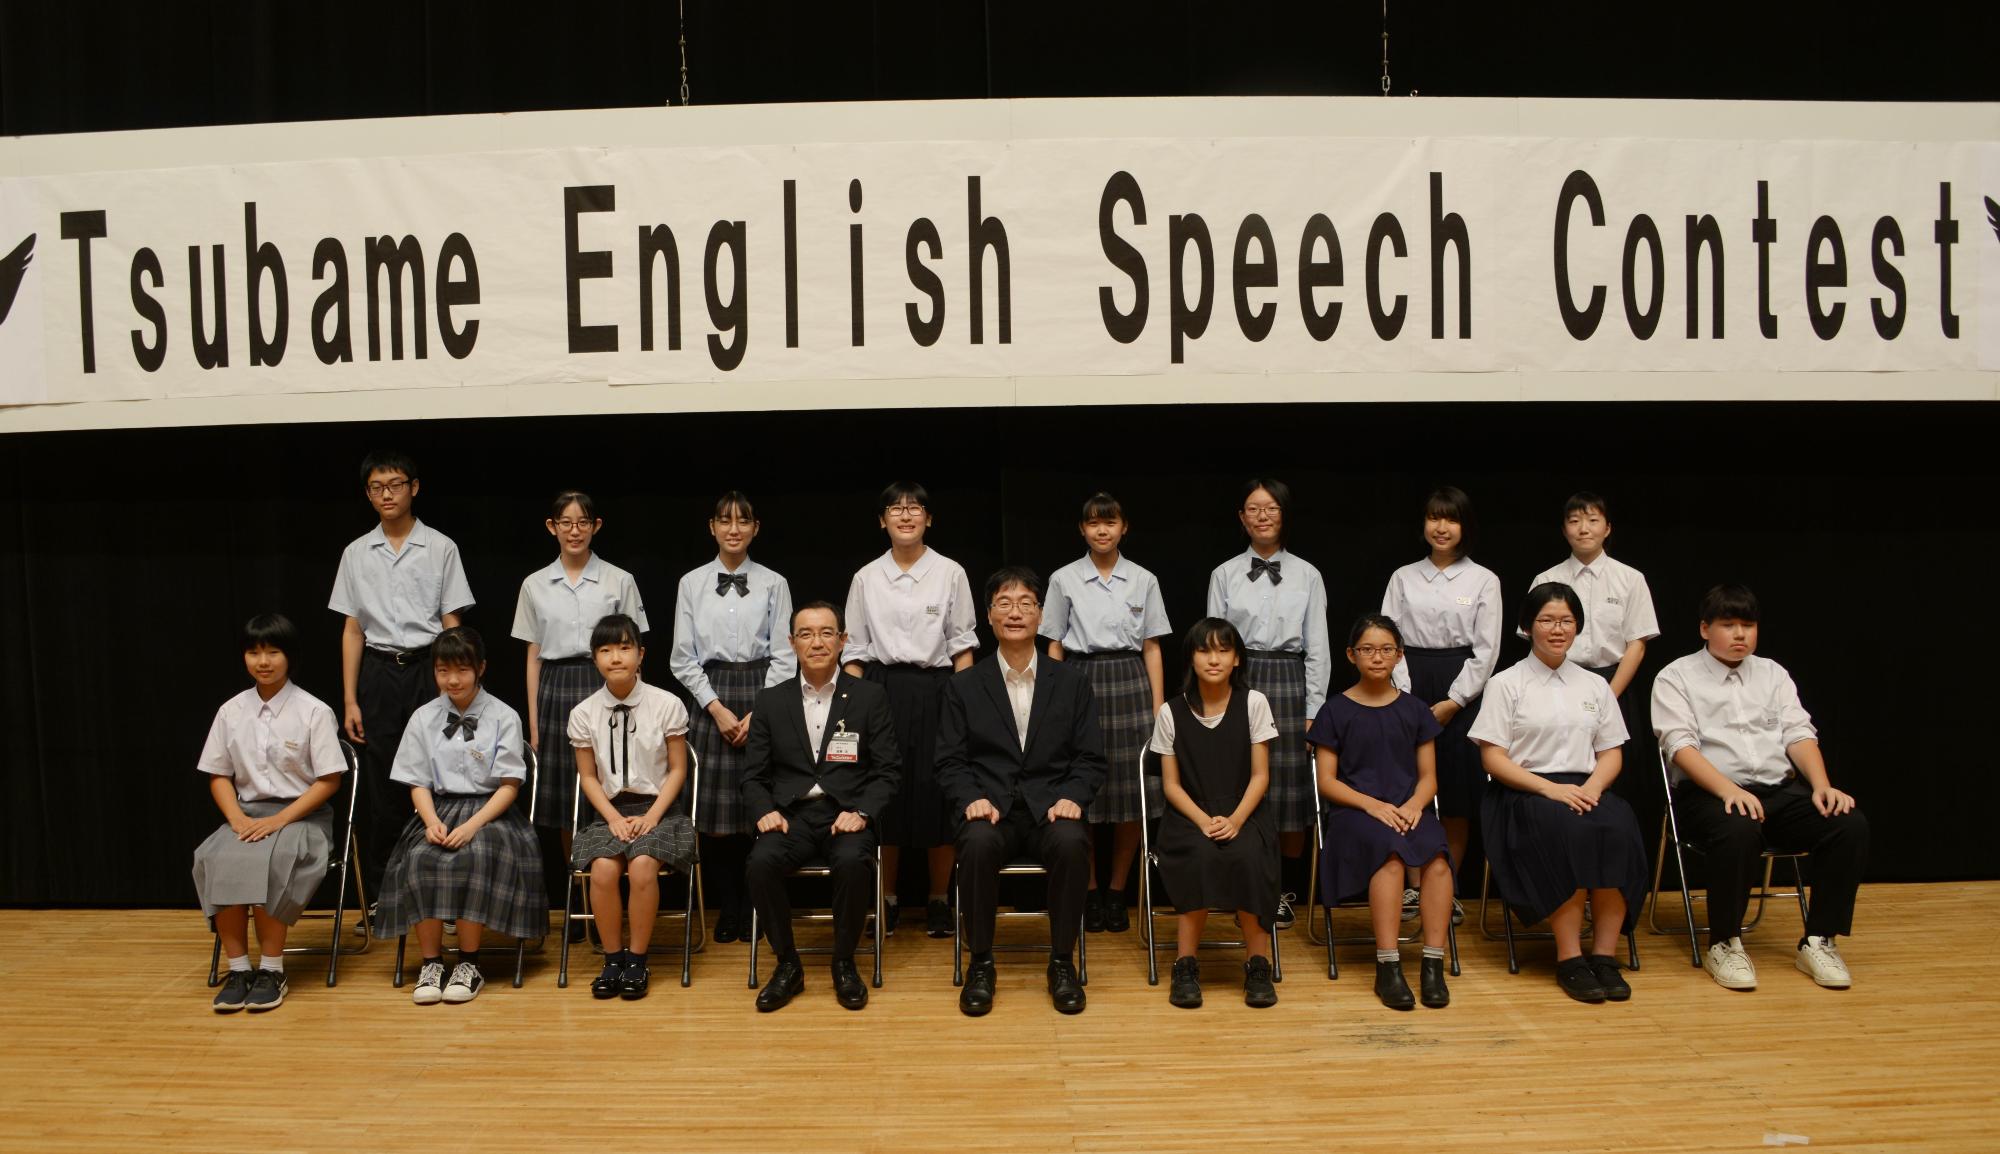 黒の暗幕の前に吊された「Tsubame English Speech Contest」と書かれた白い横断幕の下で、真ん中に座ったスーツ姿の2人の男性と共に記念撮影を行う男女の生徒たちの写真